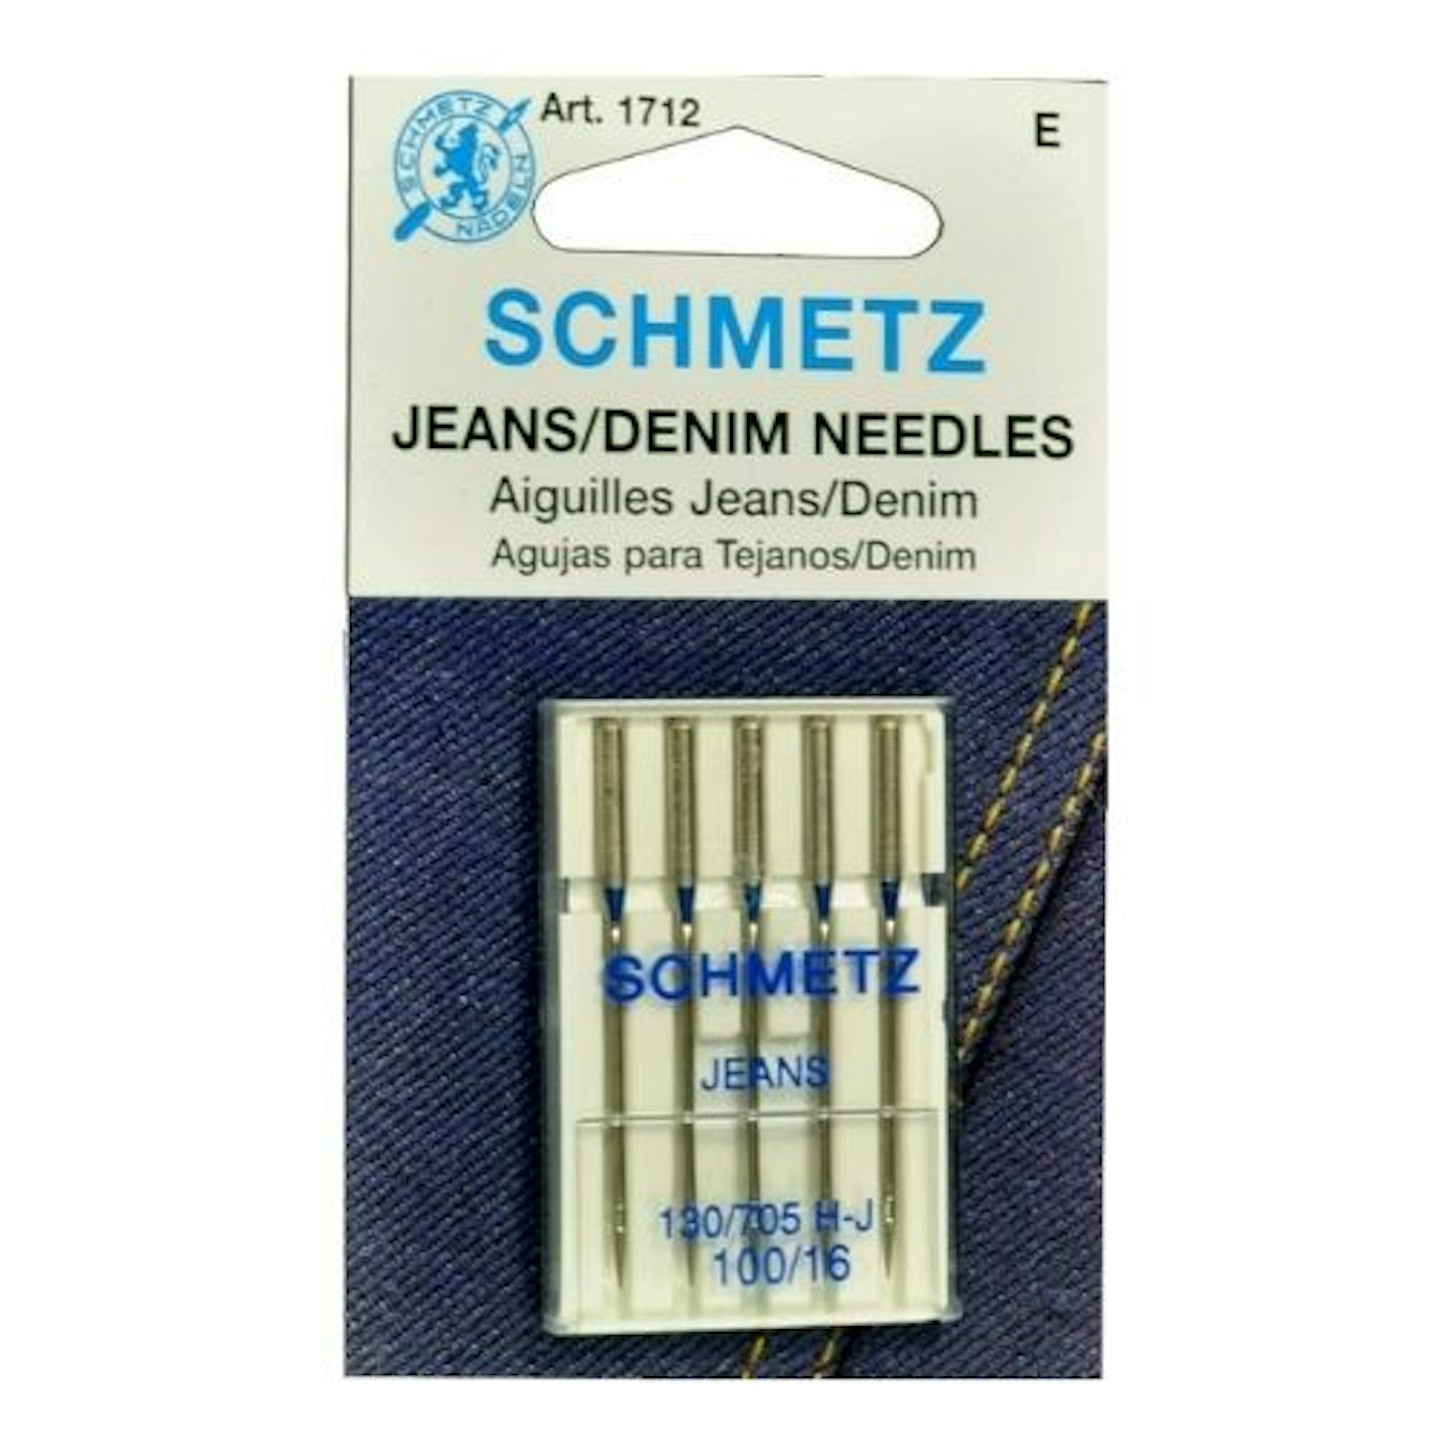 Schmetz Jeans (Denim) Household Sewing Machine Needles